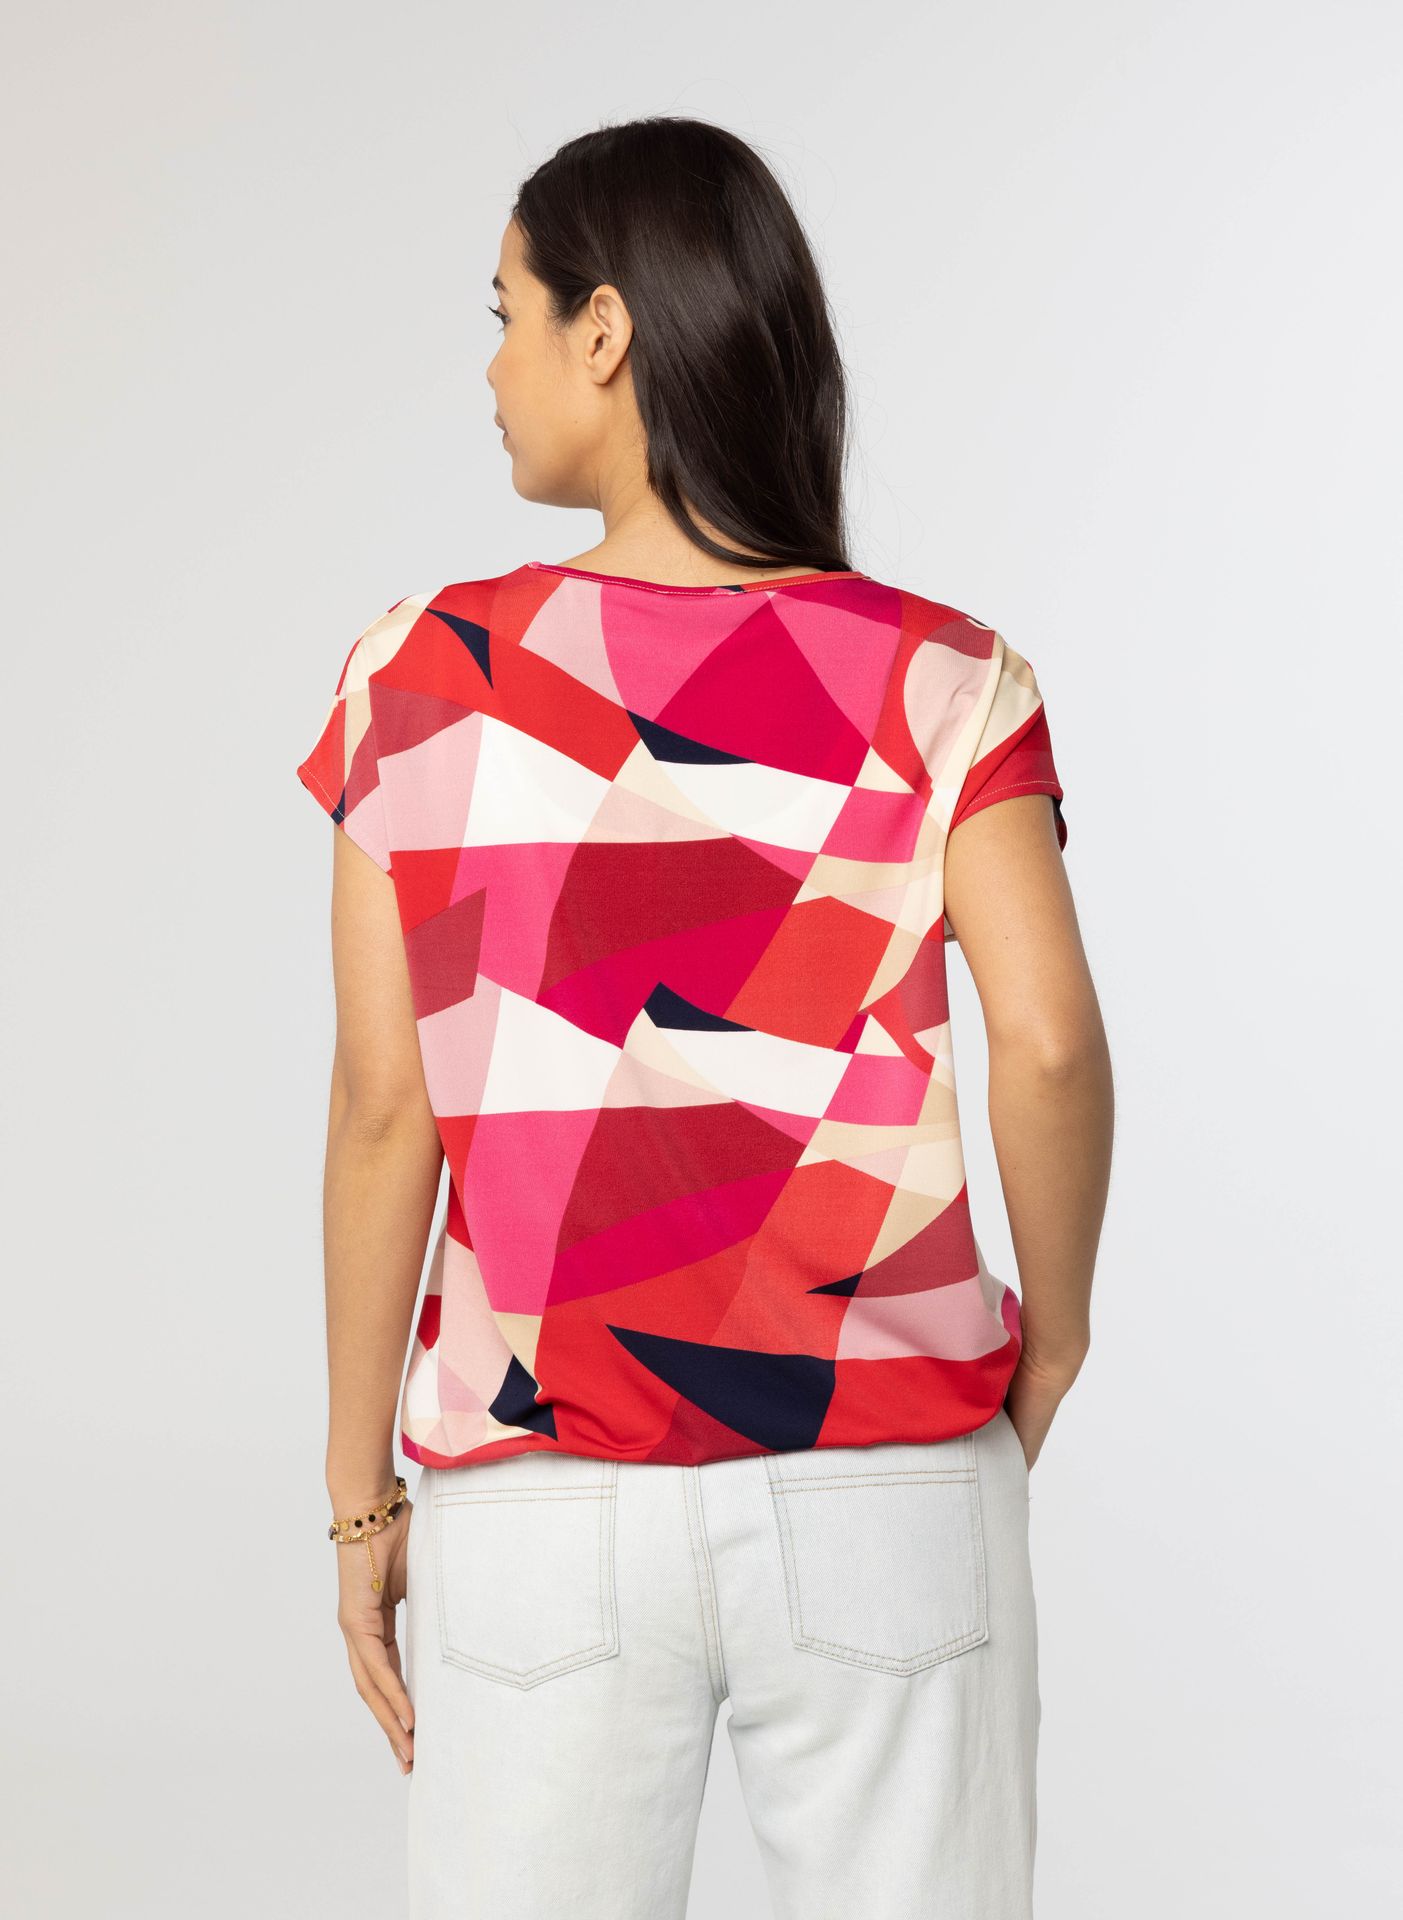 Norah Meerkleurig shirt roze multicolor 214290-002